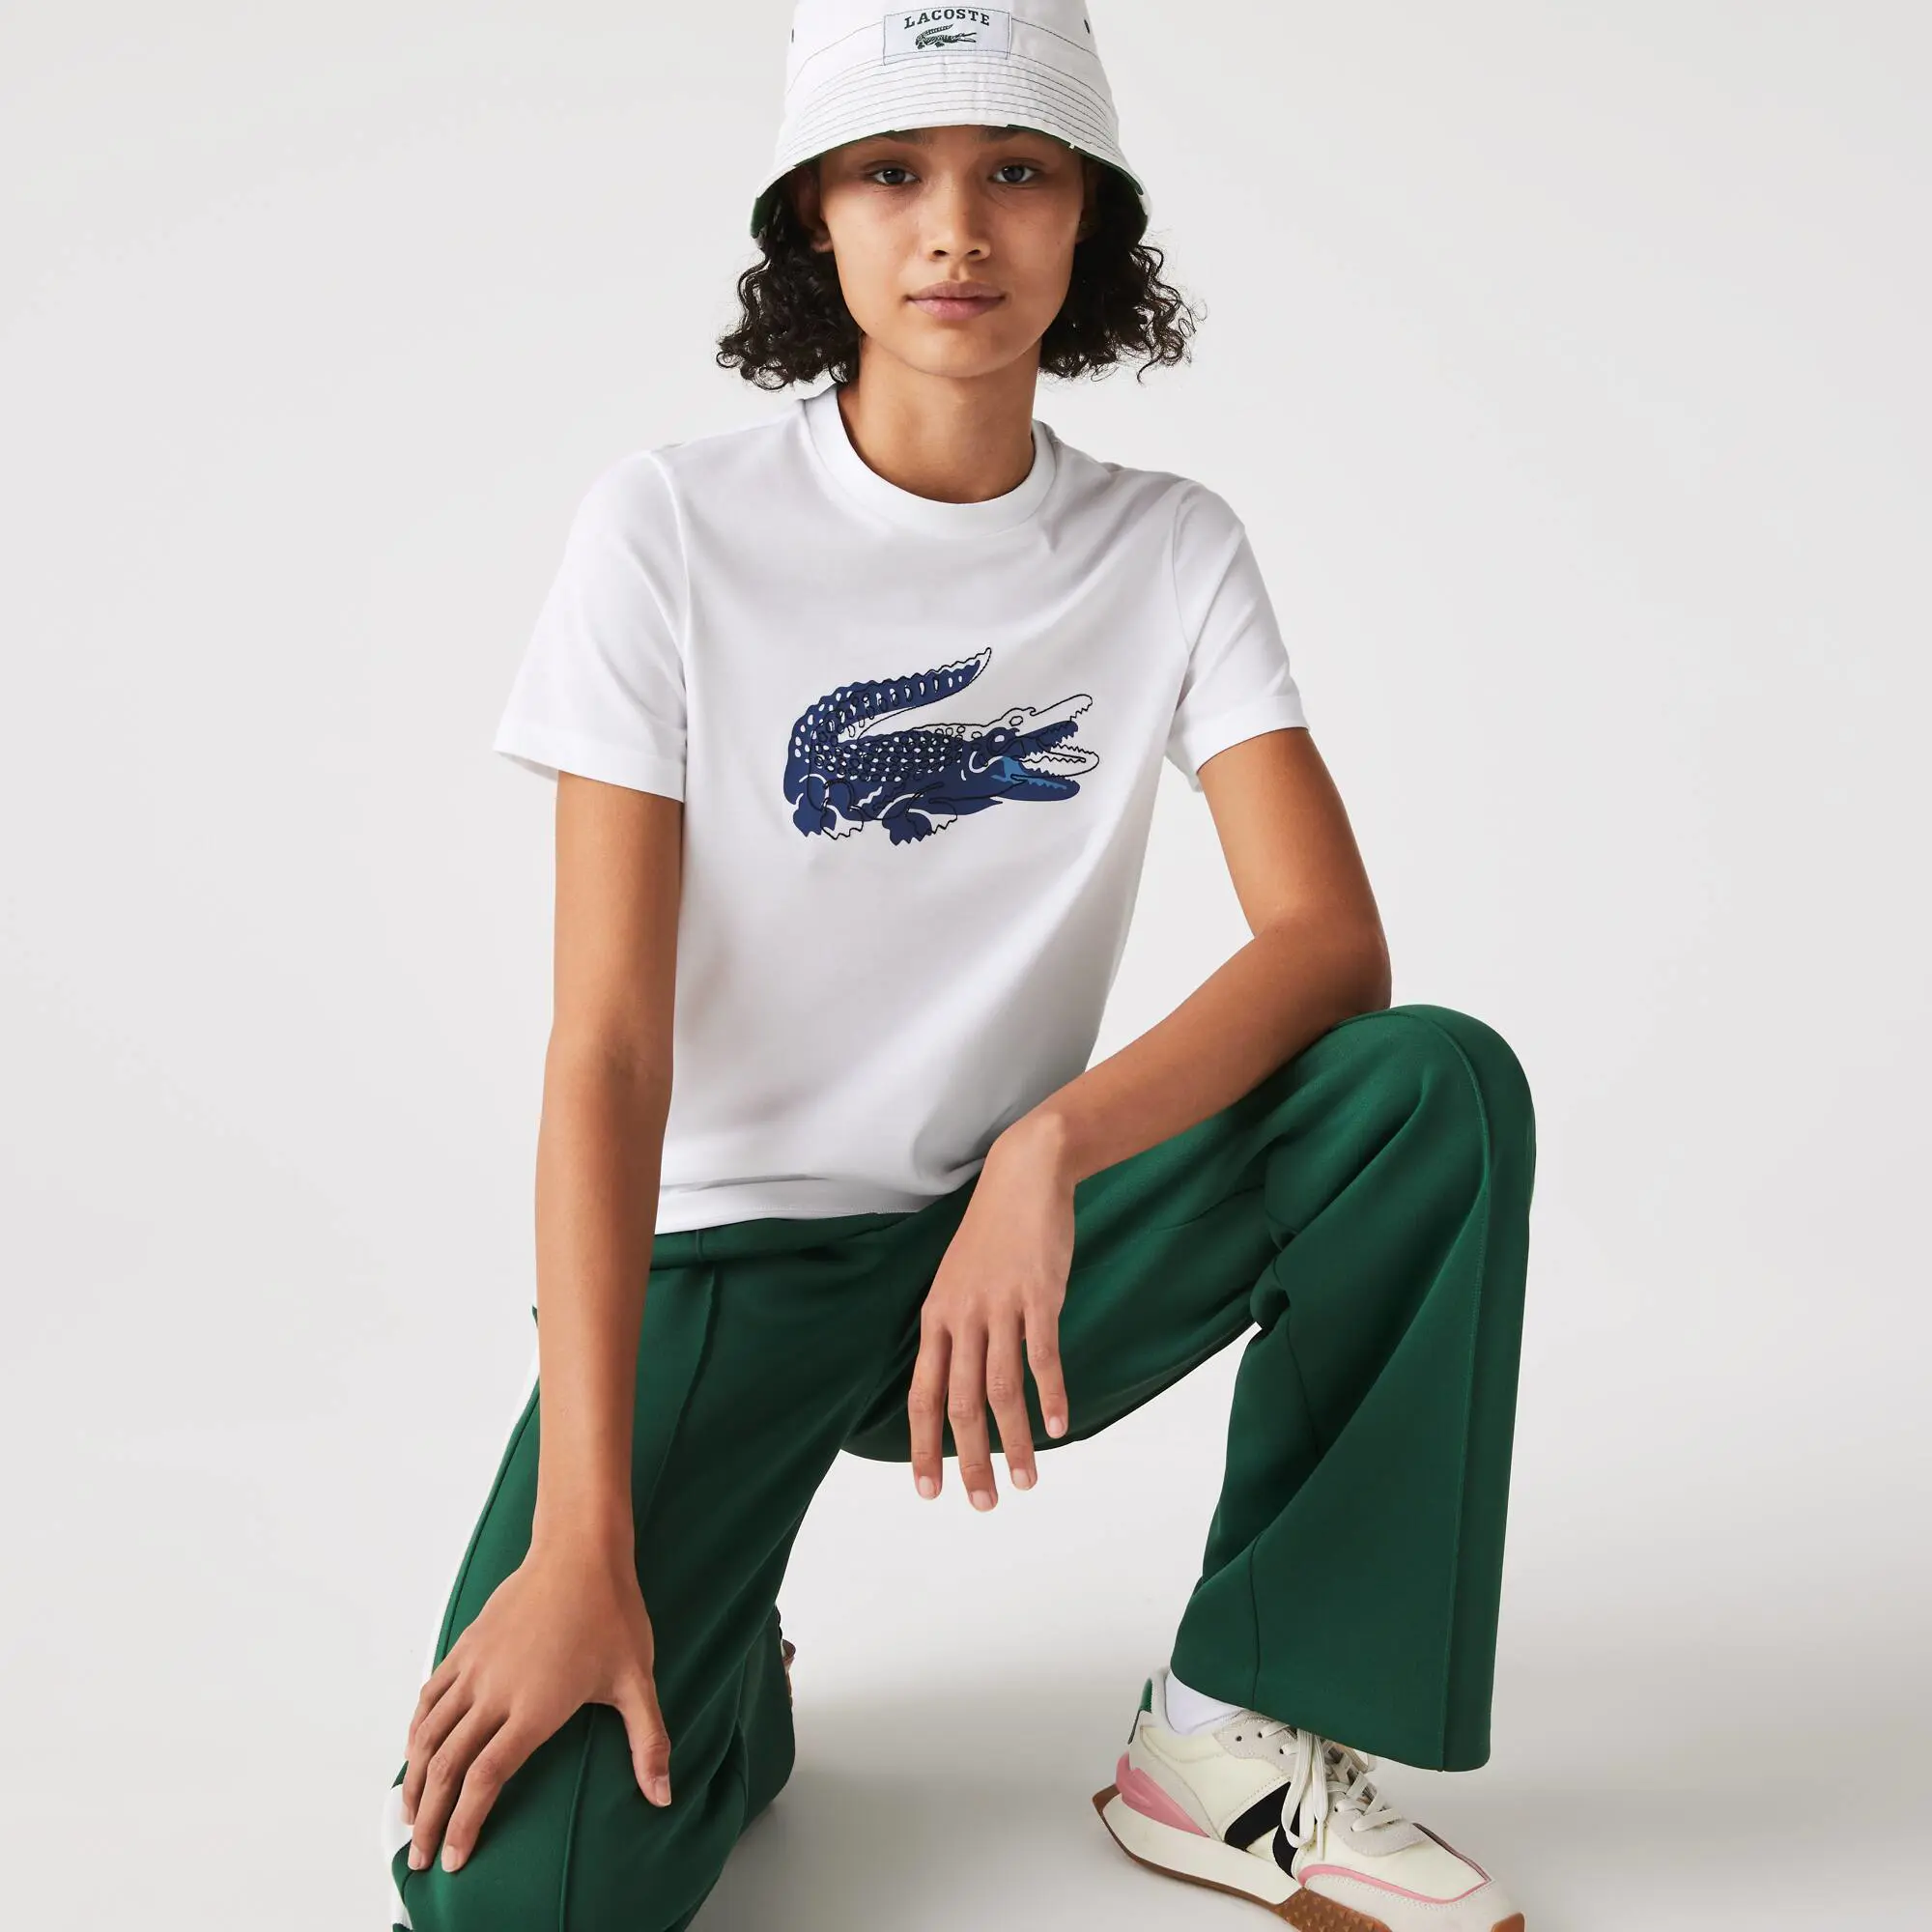 Lacoste Women's Crocodile Print Crew Neck Cotton Blend T-Shirt. 1